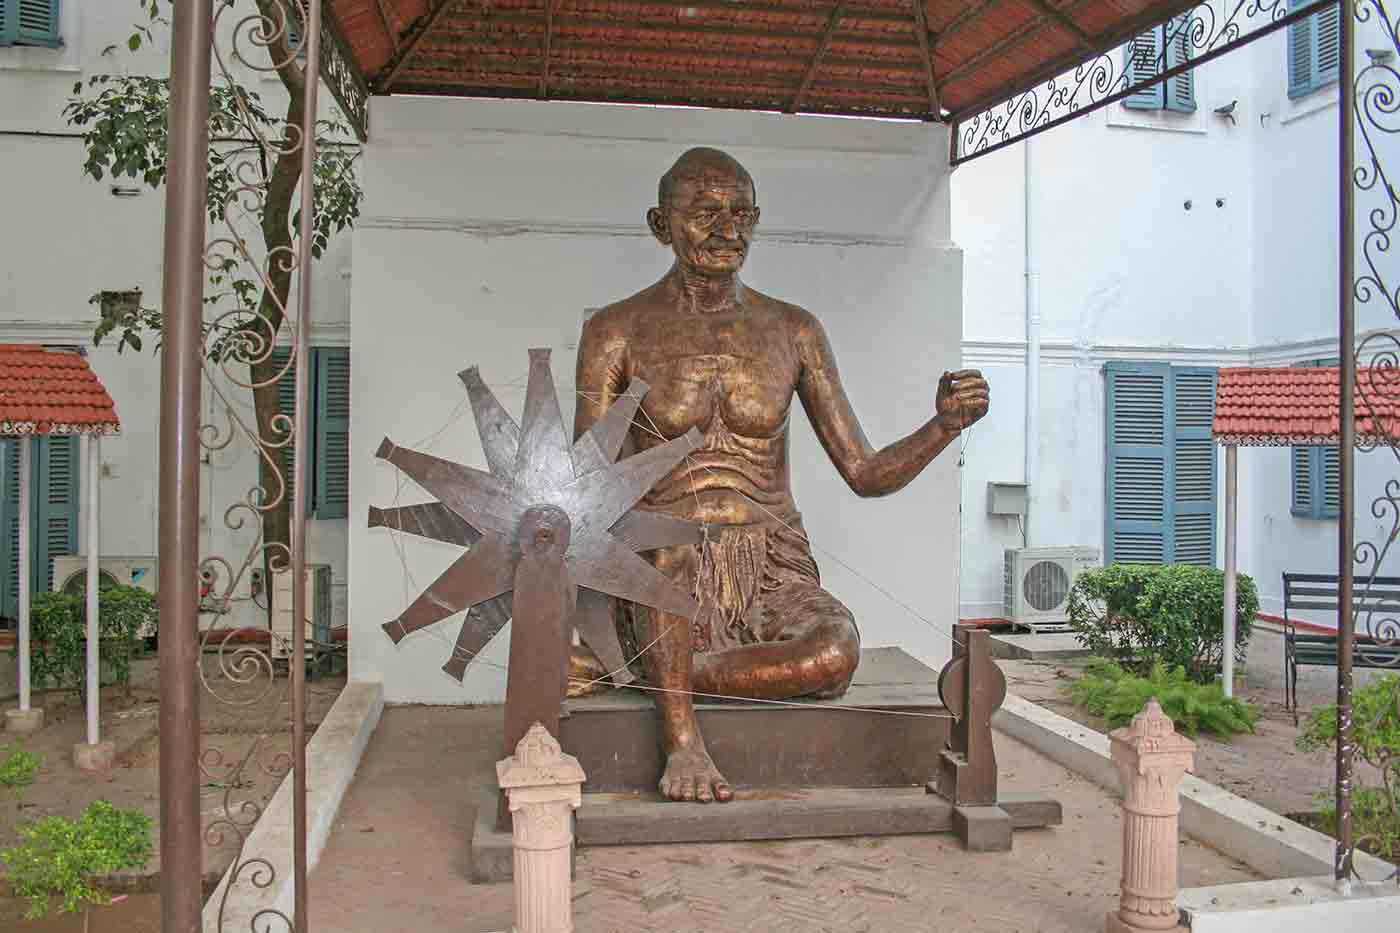 Gandhi Smriti